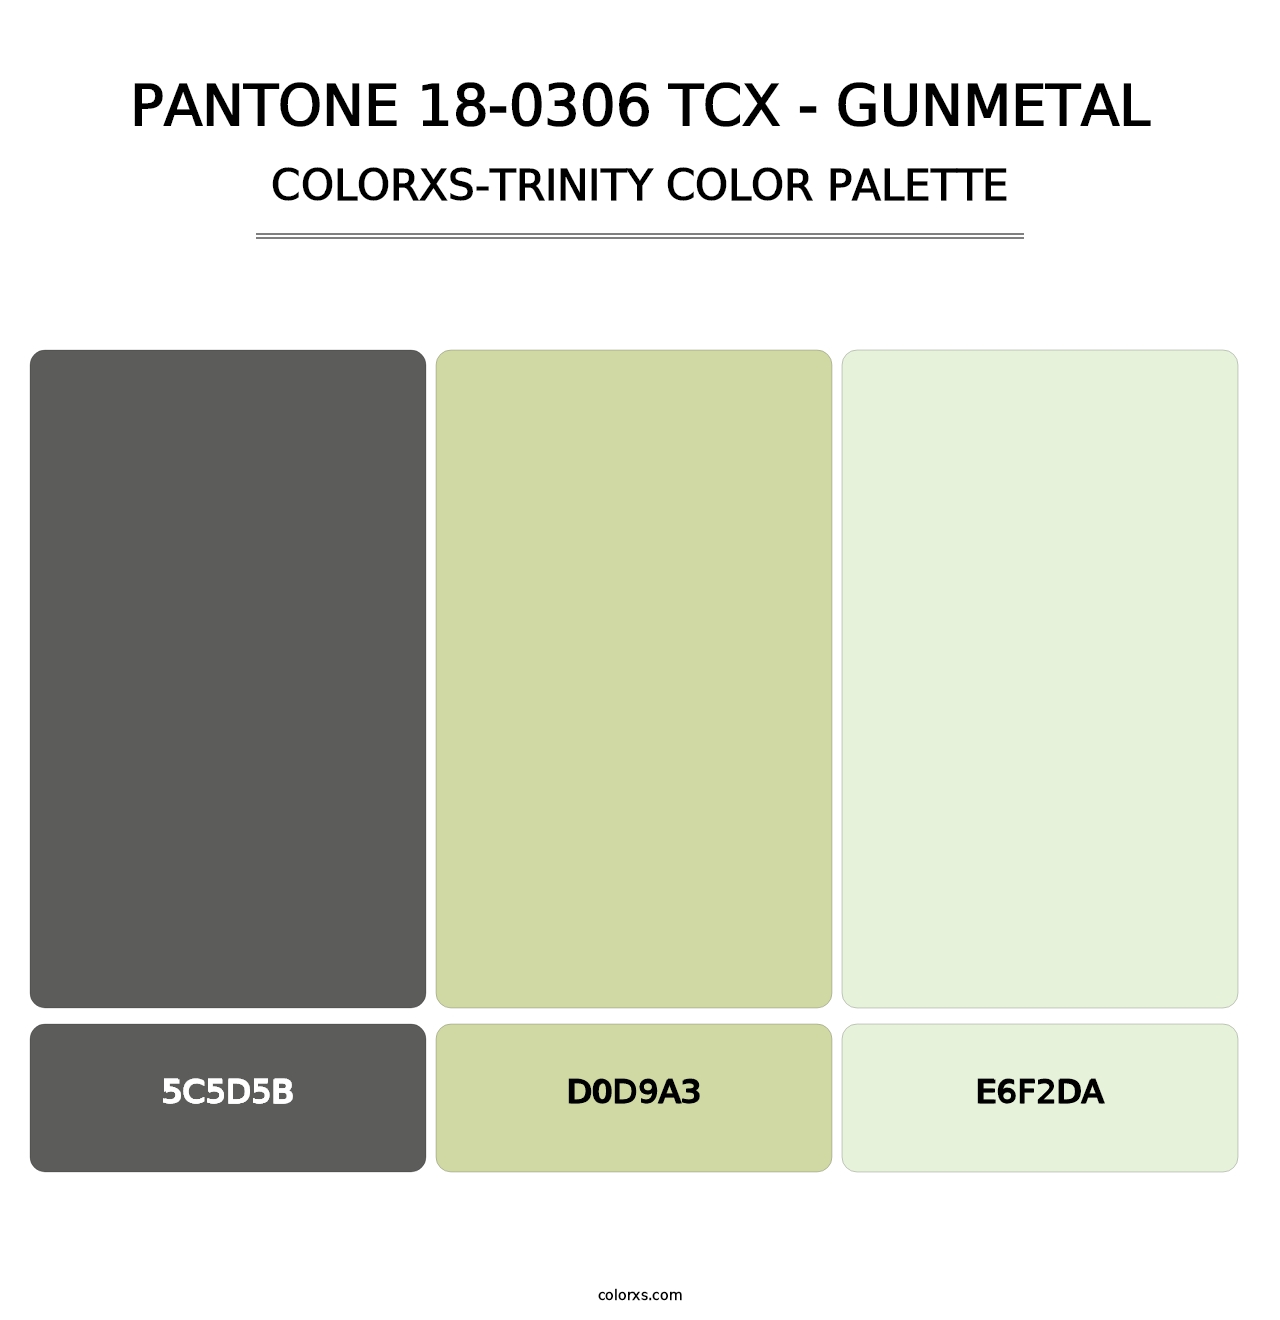 PANTONE 18-0306 TCX - Gunmetal - Colorxs Trinity Palette